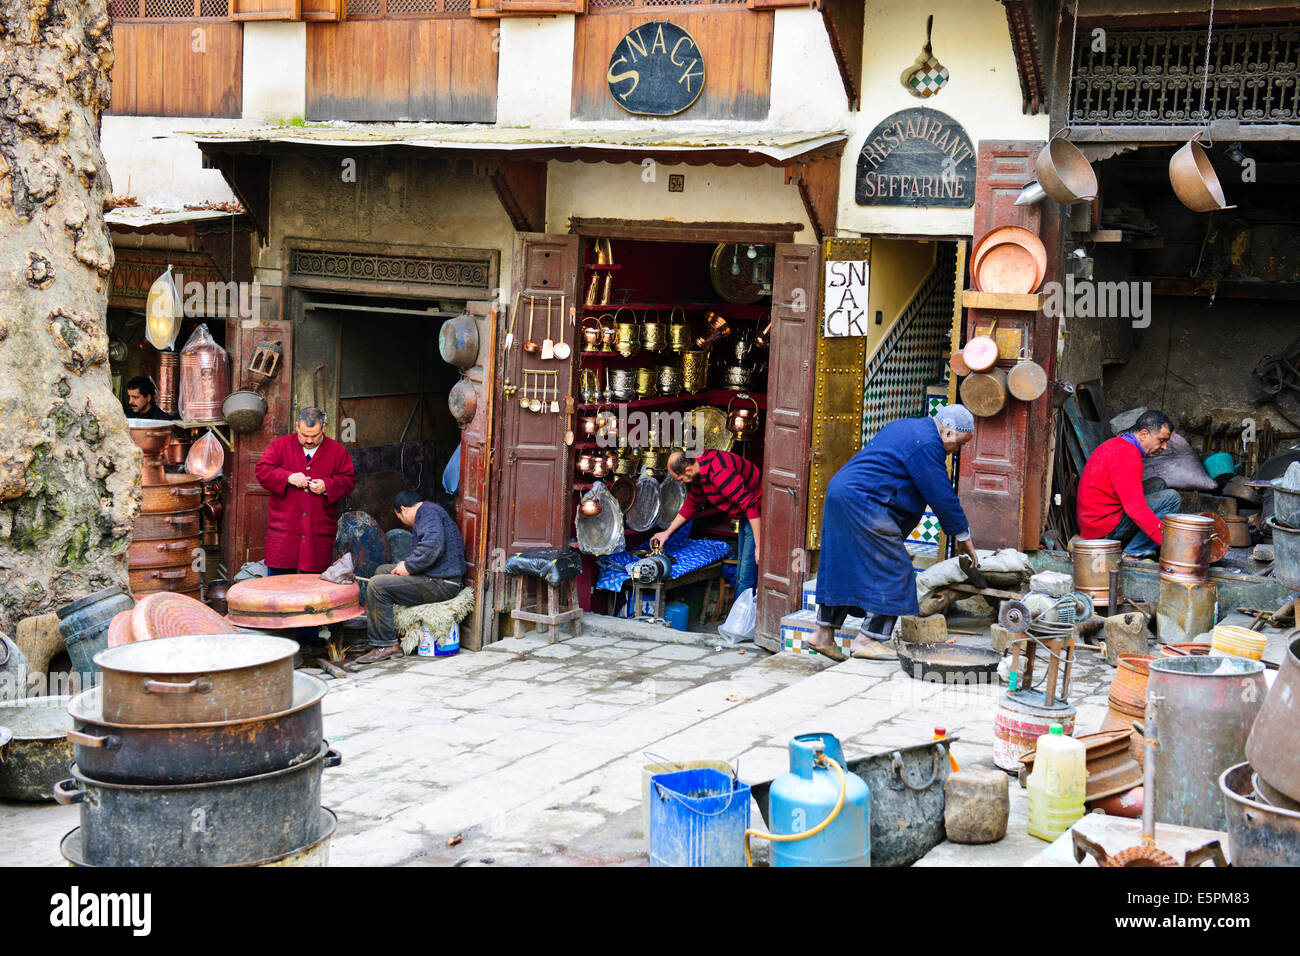 Fes,Maroc,une gamme d'arts, de l'artisanat marocain toutes  choses,tisserands en soie,Cuivre,Metal,, poterie, boutiques,,Souk Medina, Artisans,les marchés Photo Stock - Alamy